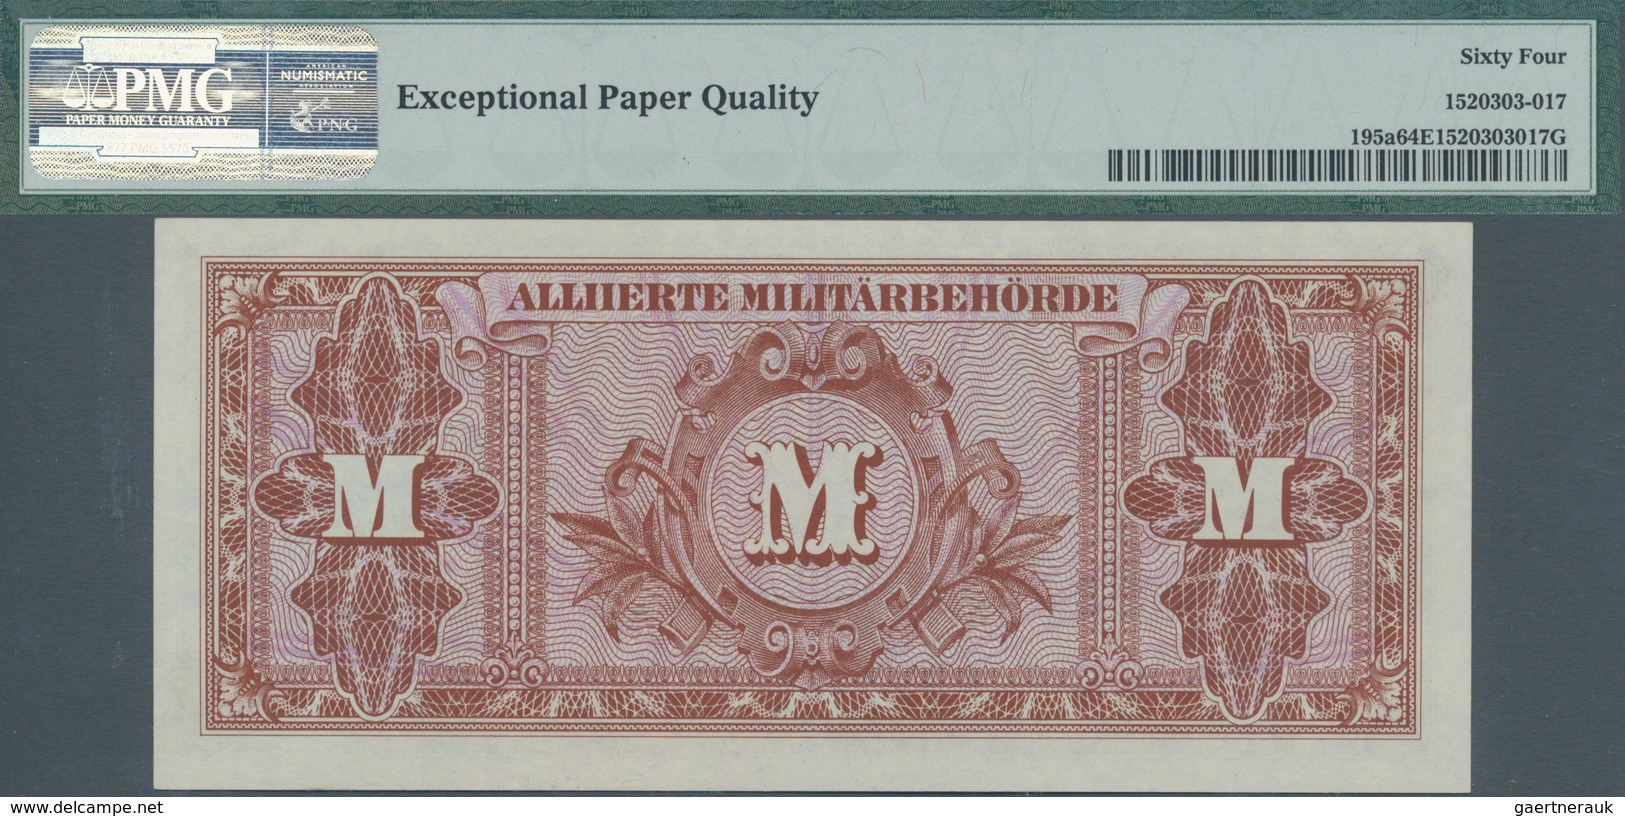 Deutschland - Alliierte Miltärbehörde + Ausgaben 1945-1948: Lot mit 11 Banknoten, dabei 3 x 20 Mark